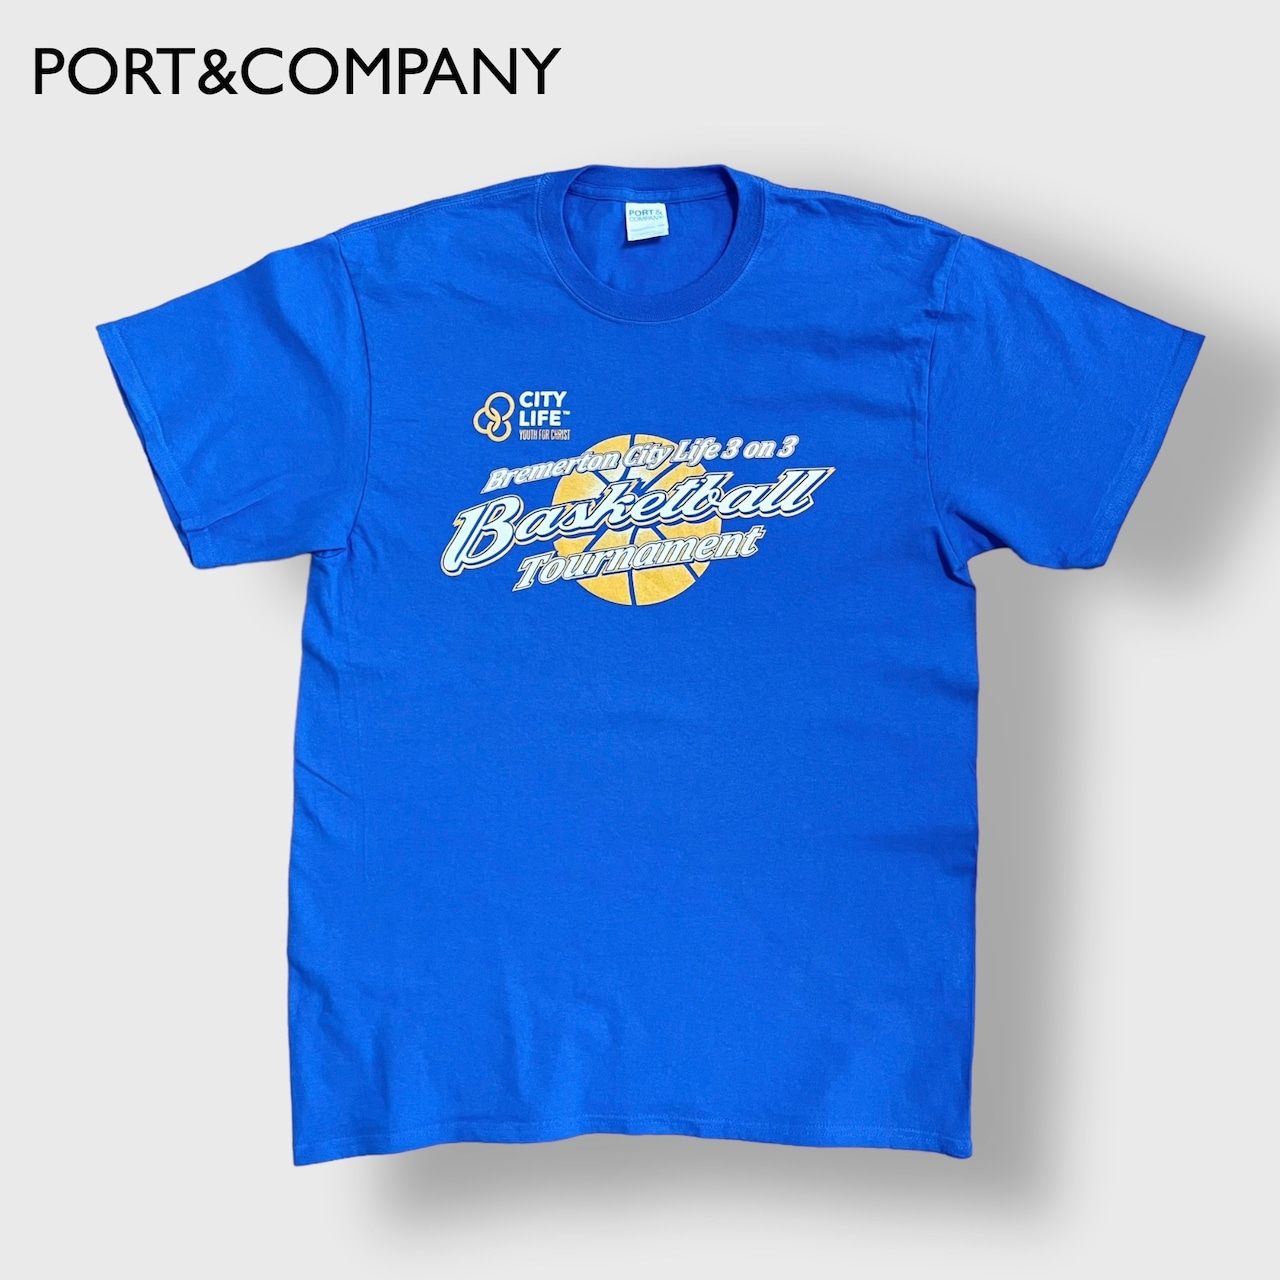 【PORT&COMPANY】3on3 バスケットボール Tシャツ ロゴ バックプリント ブルー basketball 半袖 夏物 US古着